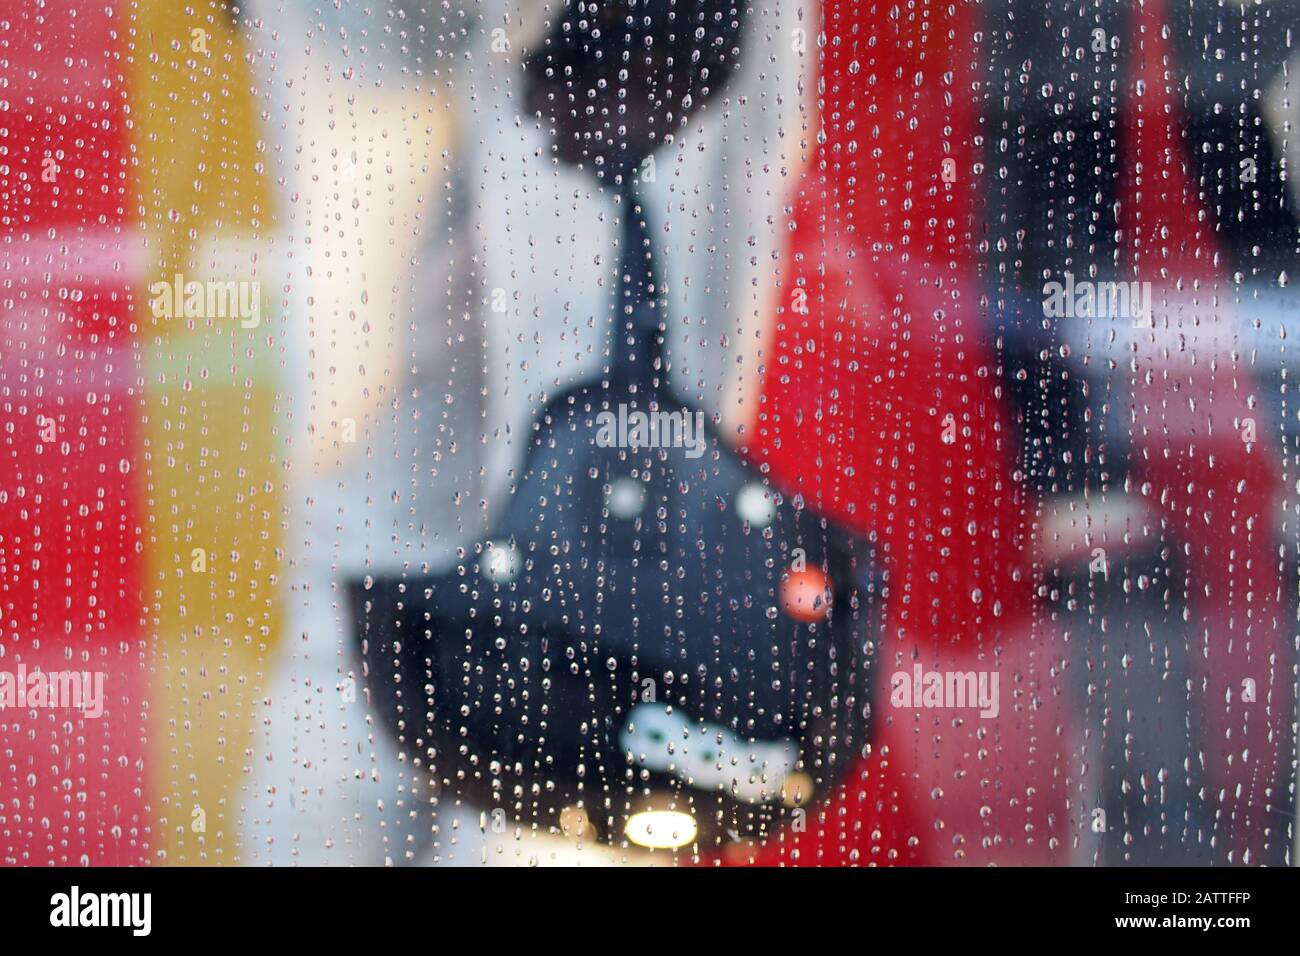 Negozio di articoli sportivi colorati (negozio di articoli sportivi) finestra manichino che tiene un casco da sci come visto attraverso una finestra molto piovosa negozio, Ottawa, Ontario, Canada. Foto Stock